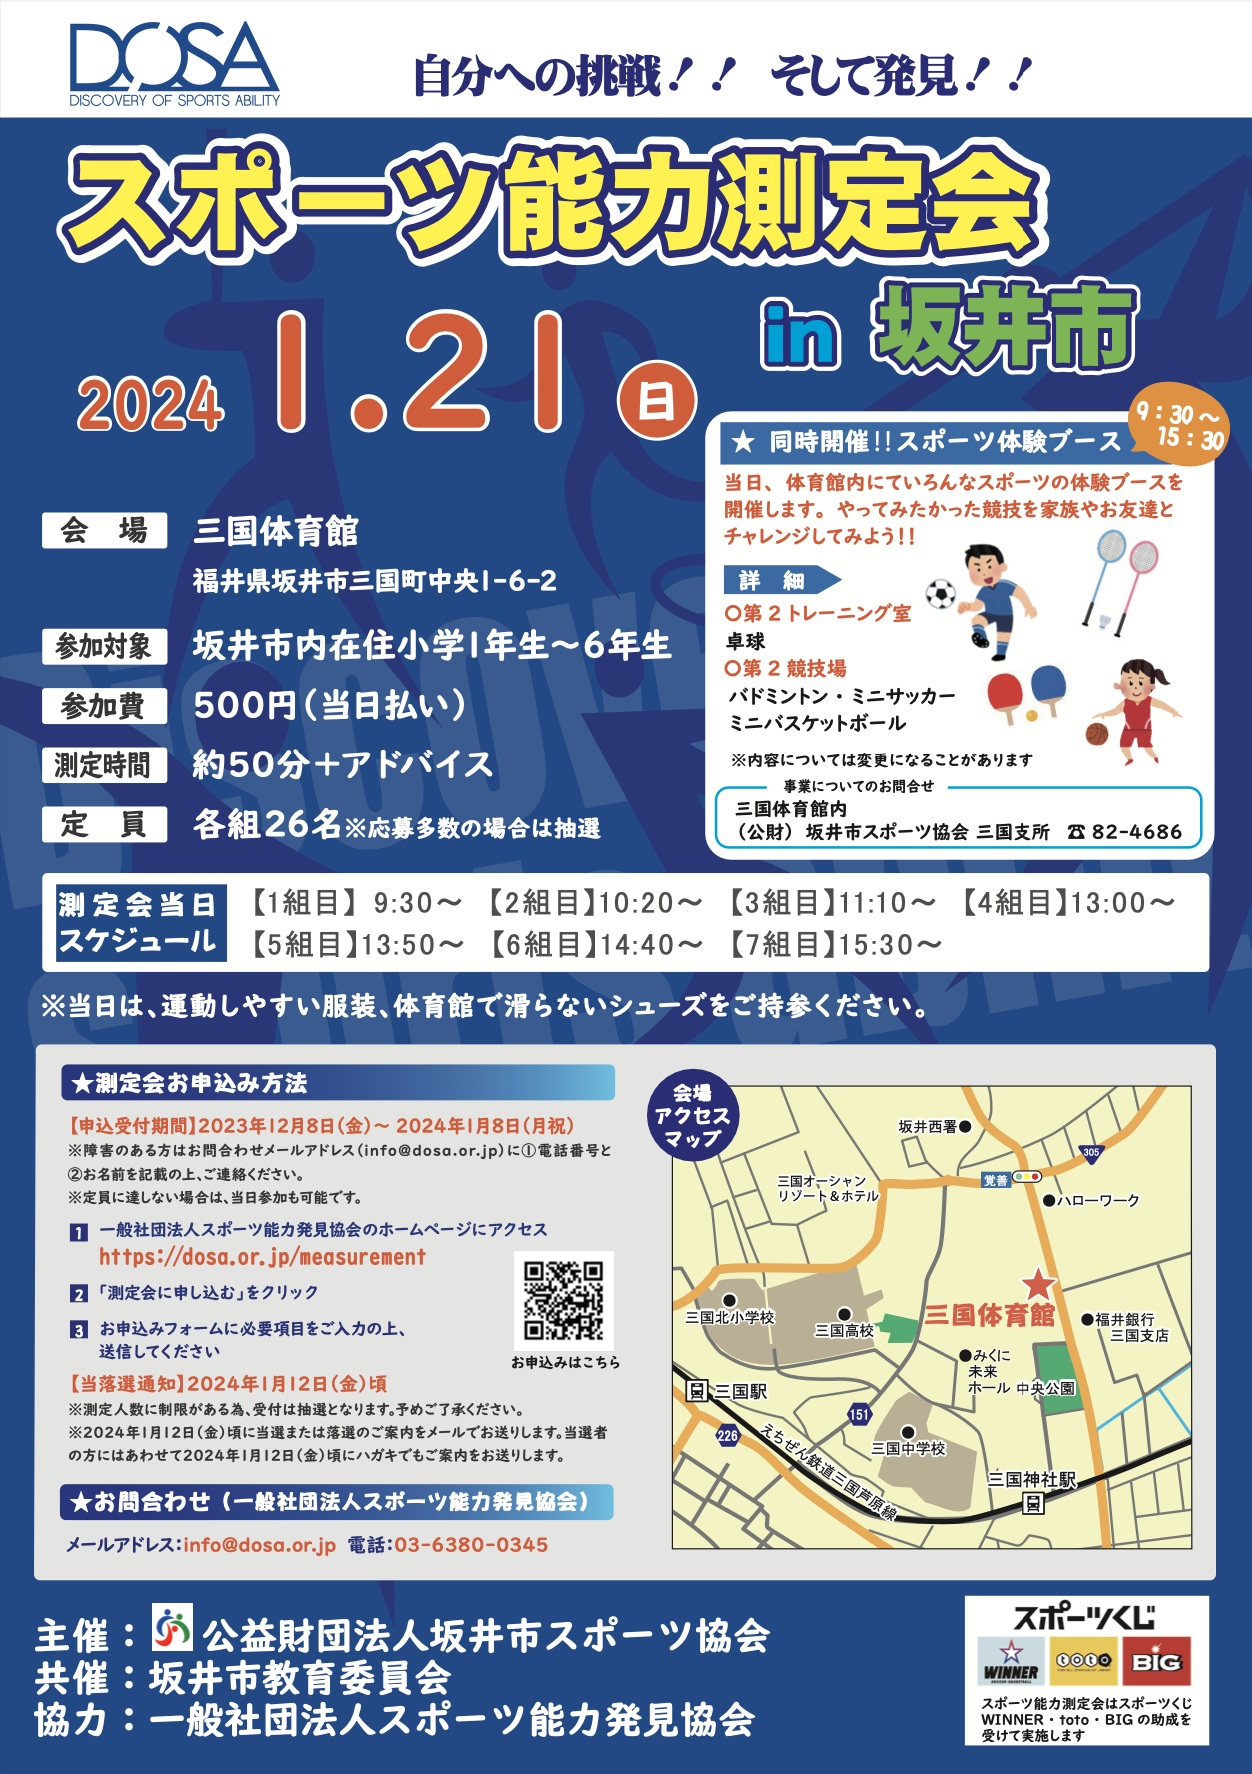 2024/1/21 スポーツ能力測定会 in 坂井を開催します。